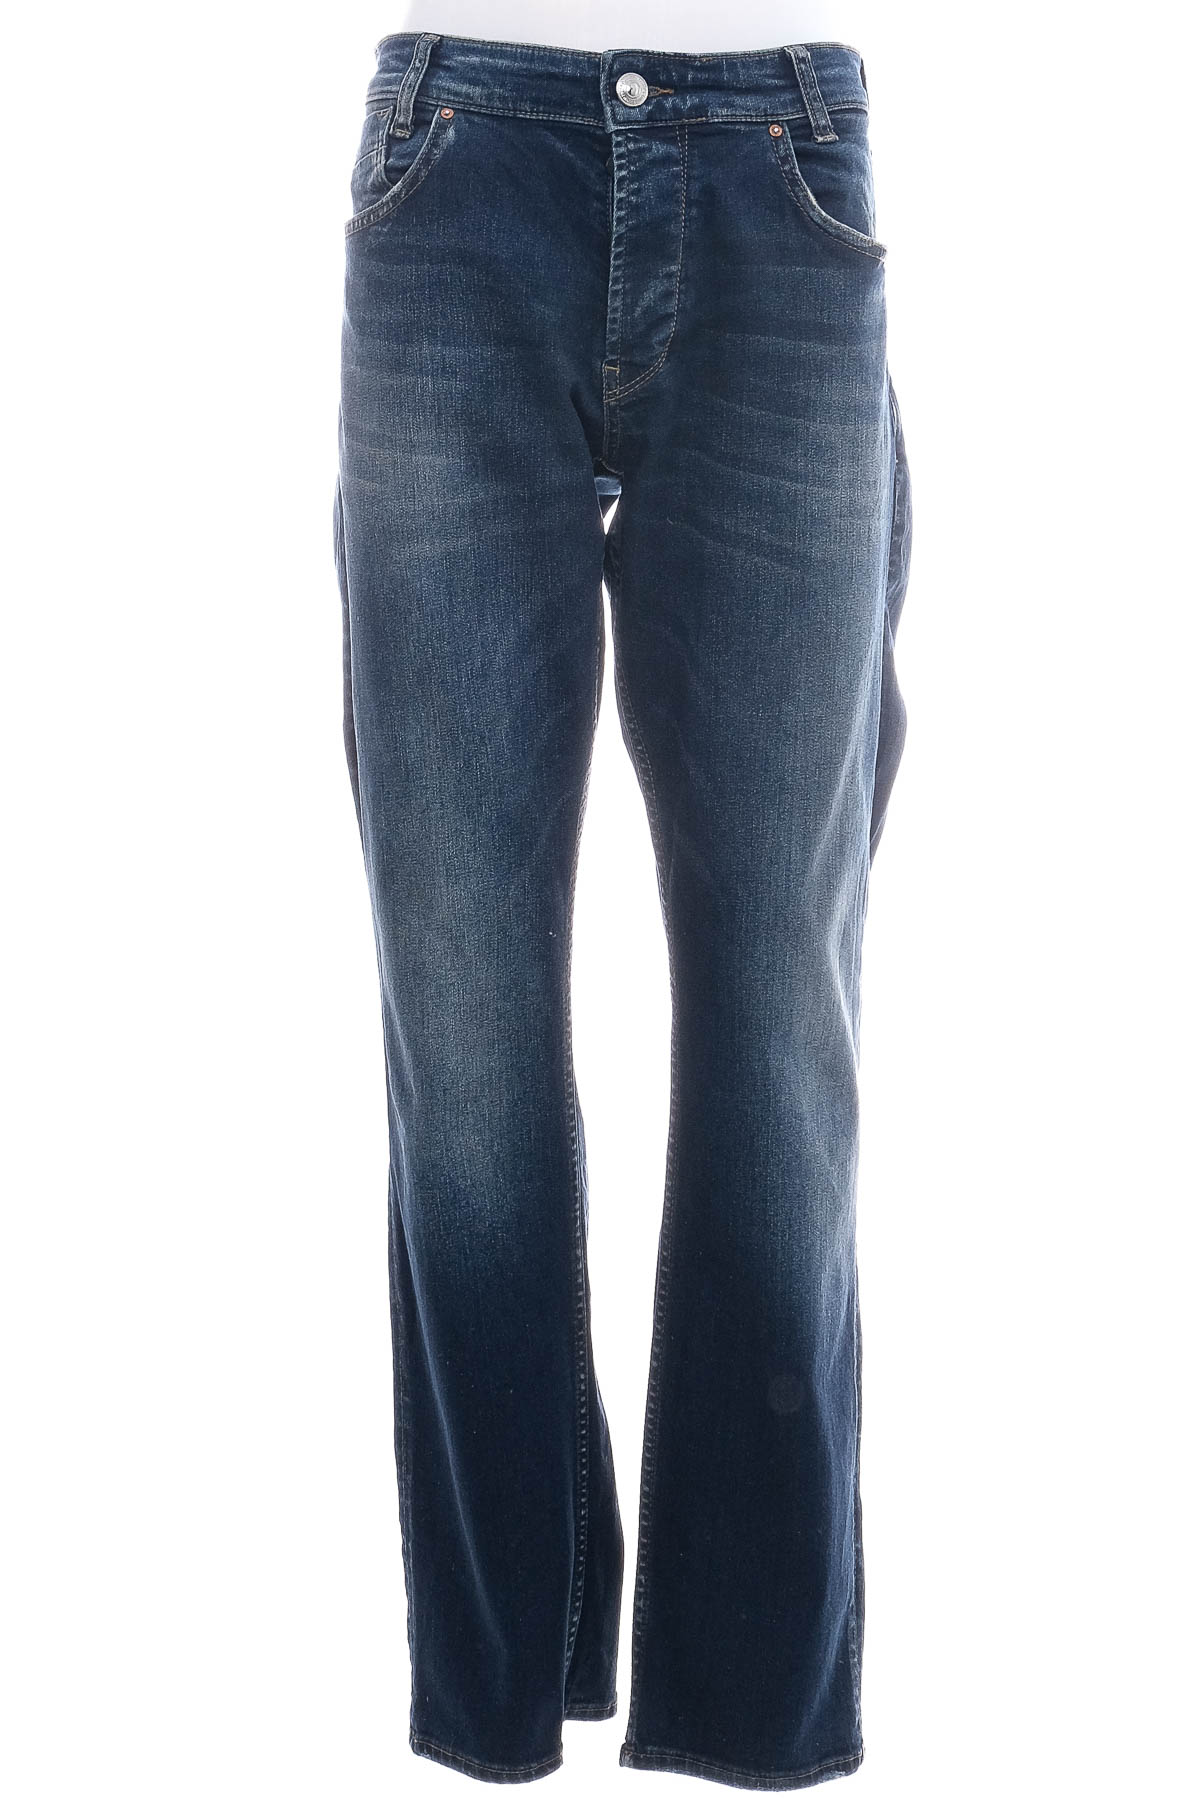 Jeans pentru bărbăți - GABBIA - 0